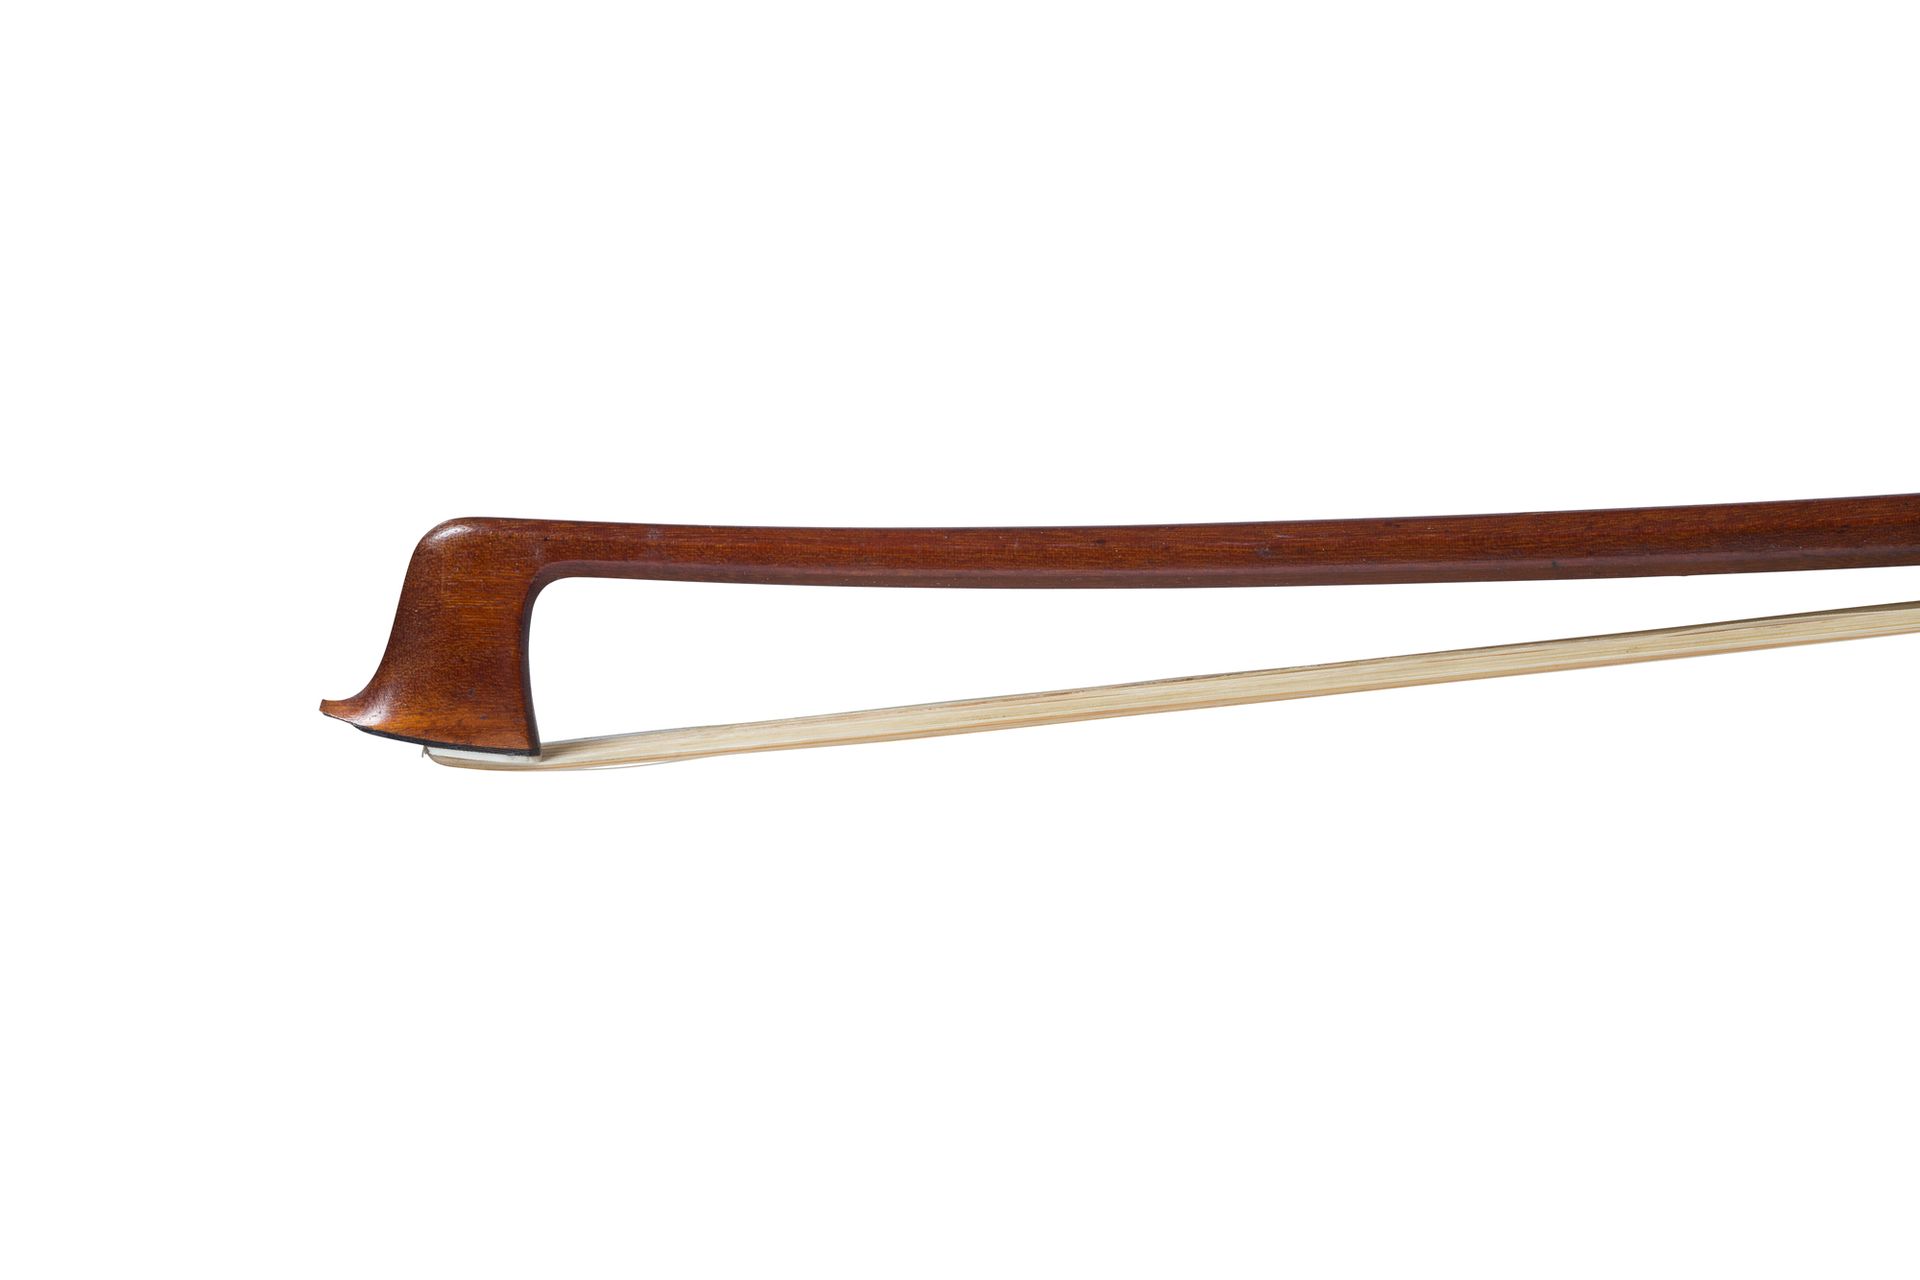 Null 德国学校的小提琴弓
1930年左右制造
没有铁的标记
美丽的伯南布哥木棒，黑檀木和银质的蛙头和按钮
状况良好
重量：56克。棍子长度：72.9厘米